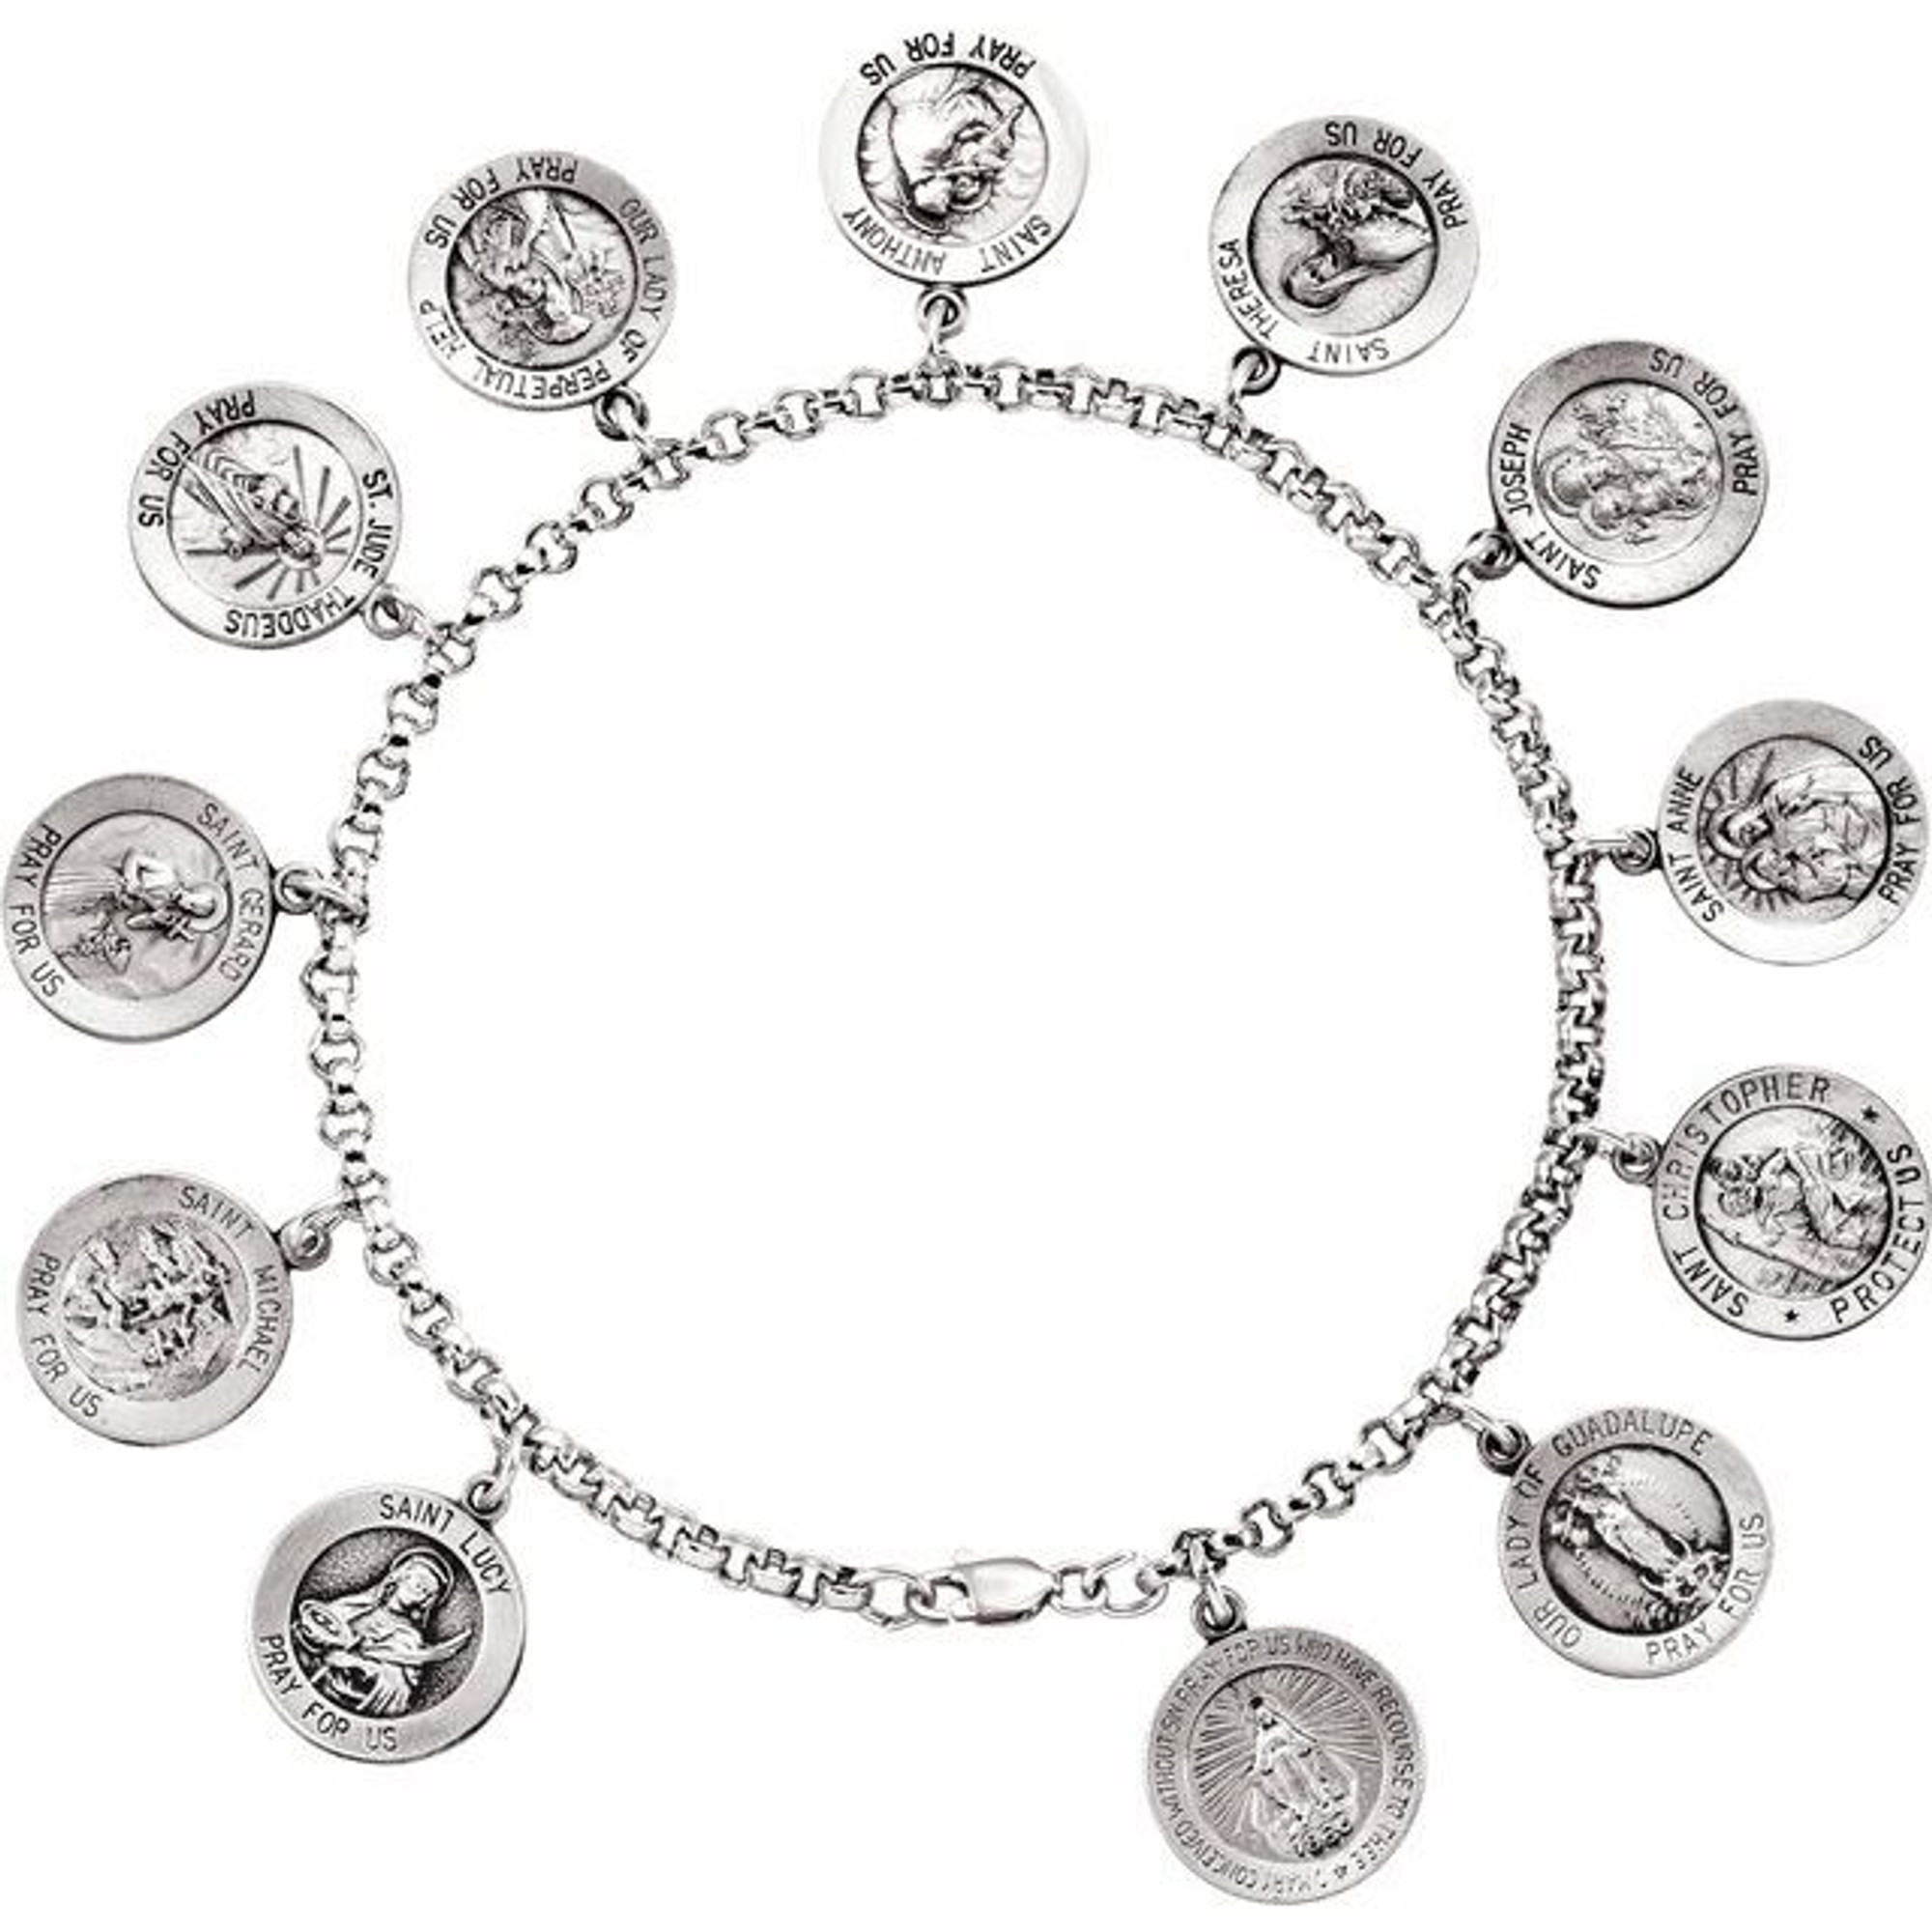 Saints Charm Bracelet in Sterling Silver, 7.25